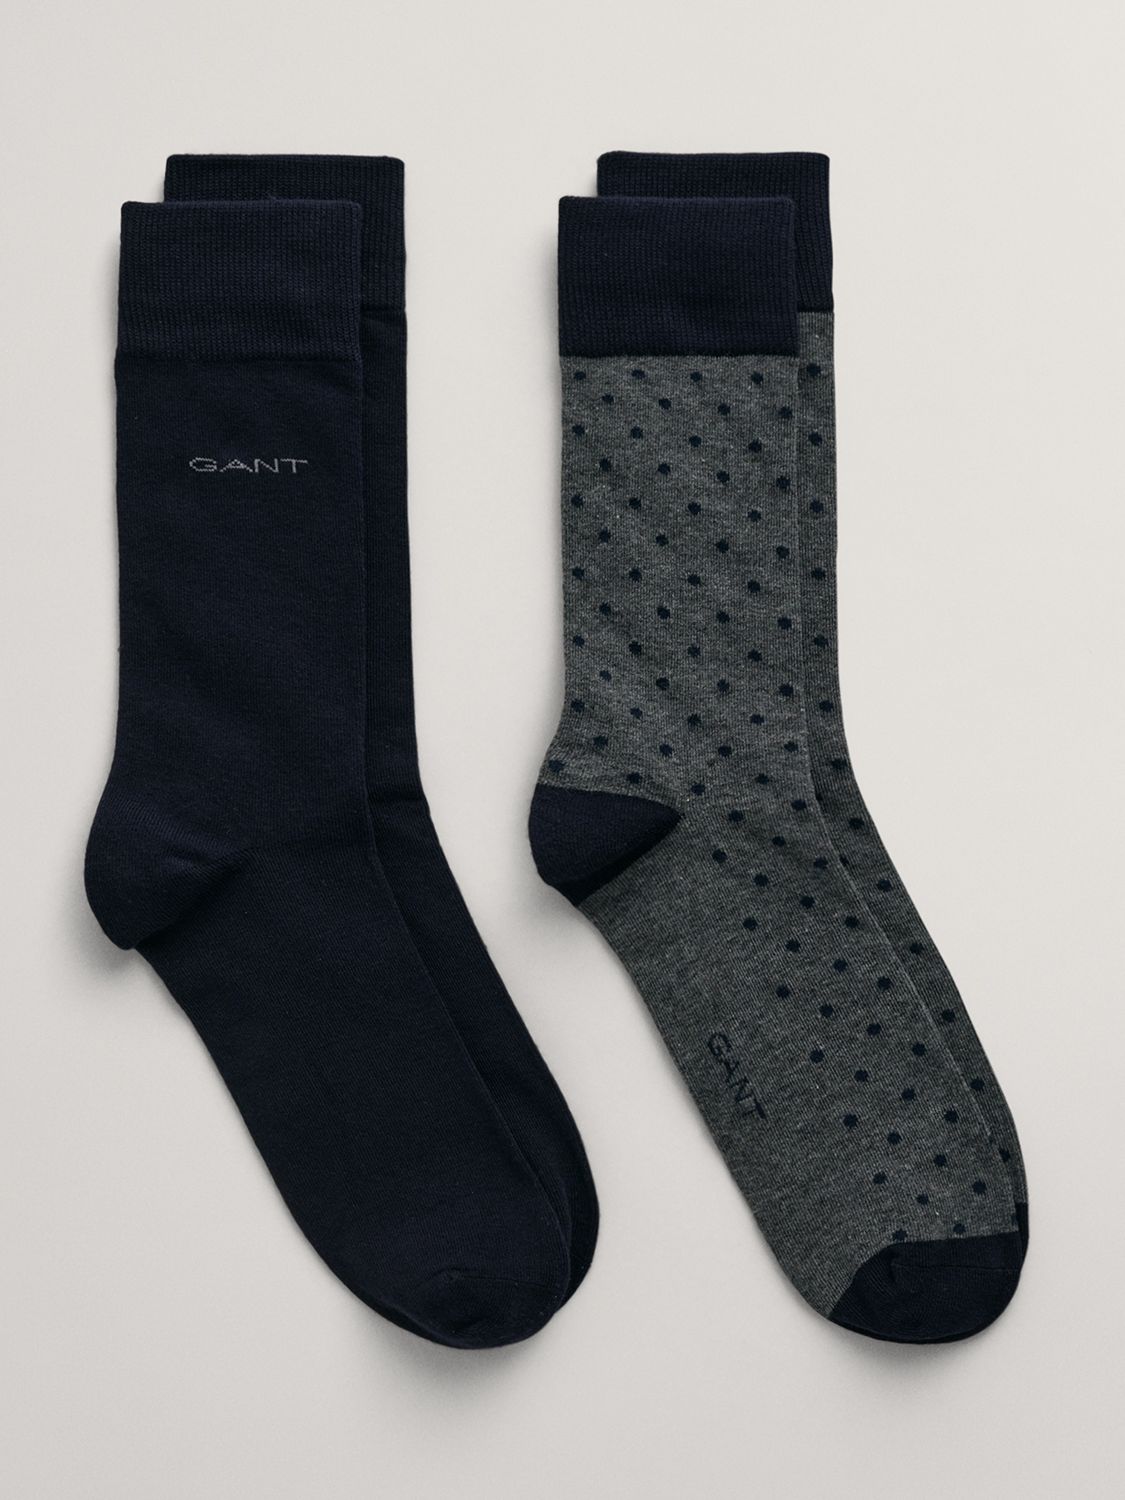 GANT Plain & Polka Dot Cotton Blend Socks, Pack of 2, Charcoal, S-M